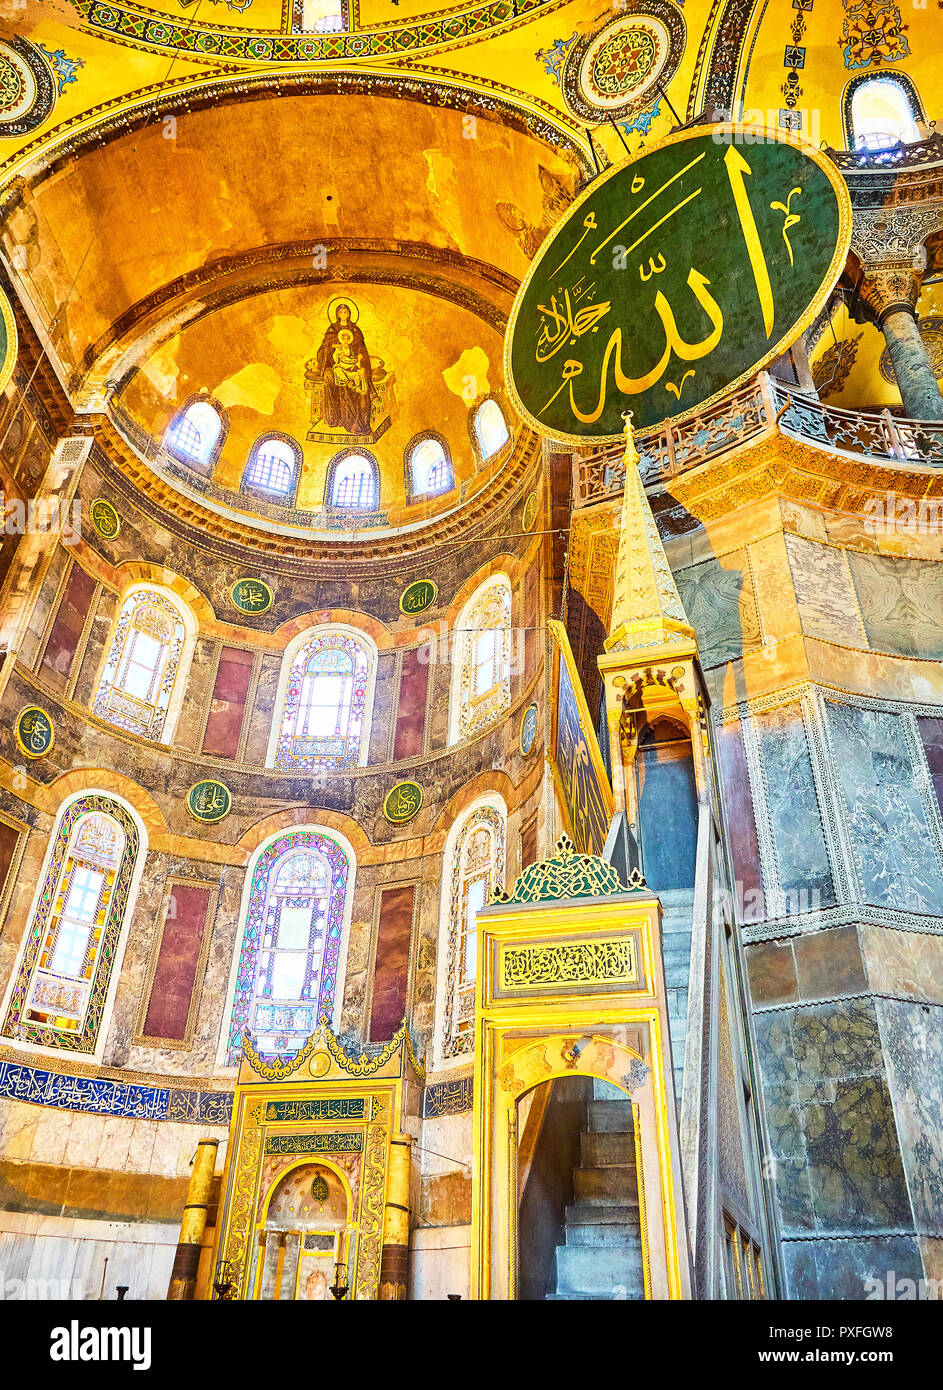 Minbar, il pulpito a destra dell'altare di Hagia Sophia, la moschea e la zona absidale con il mosaico della Vergine Maria in background. Istanbul Foto Stock